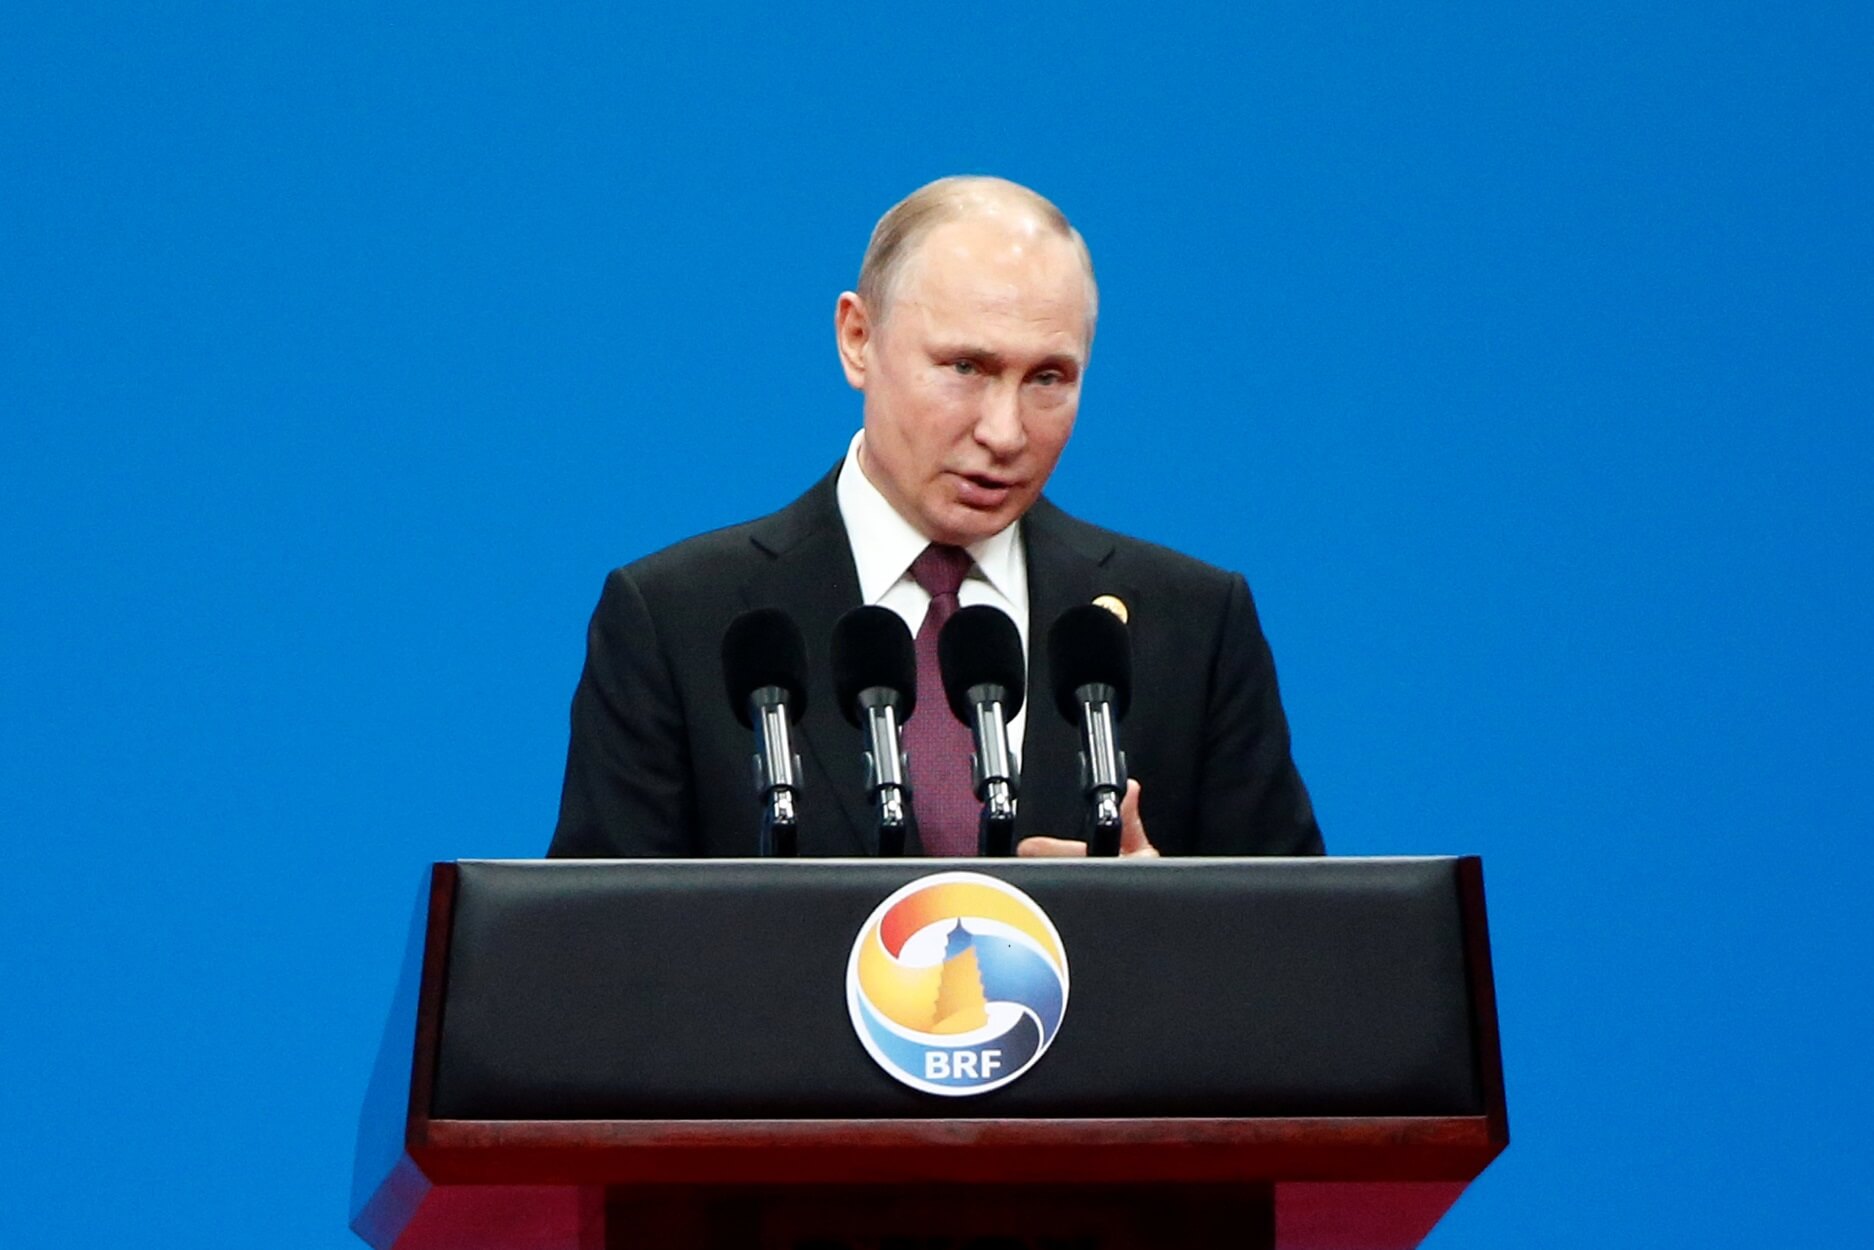 Πούτιν: “Θετικός” στην διεξαγωγή έρευνας για το μολυσμένο πετρέλαιο